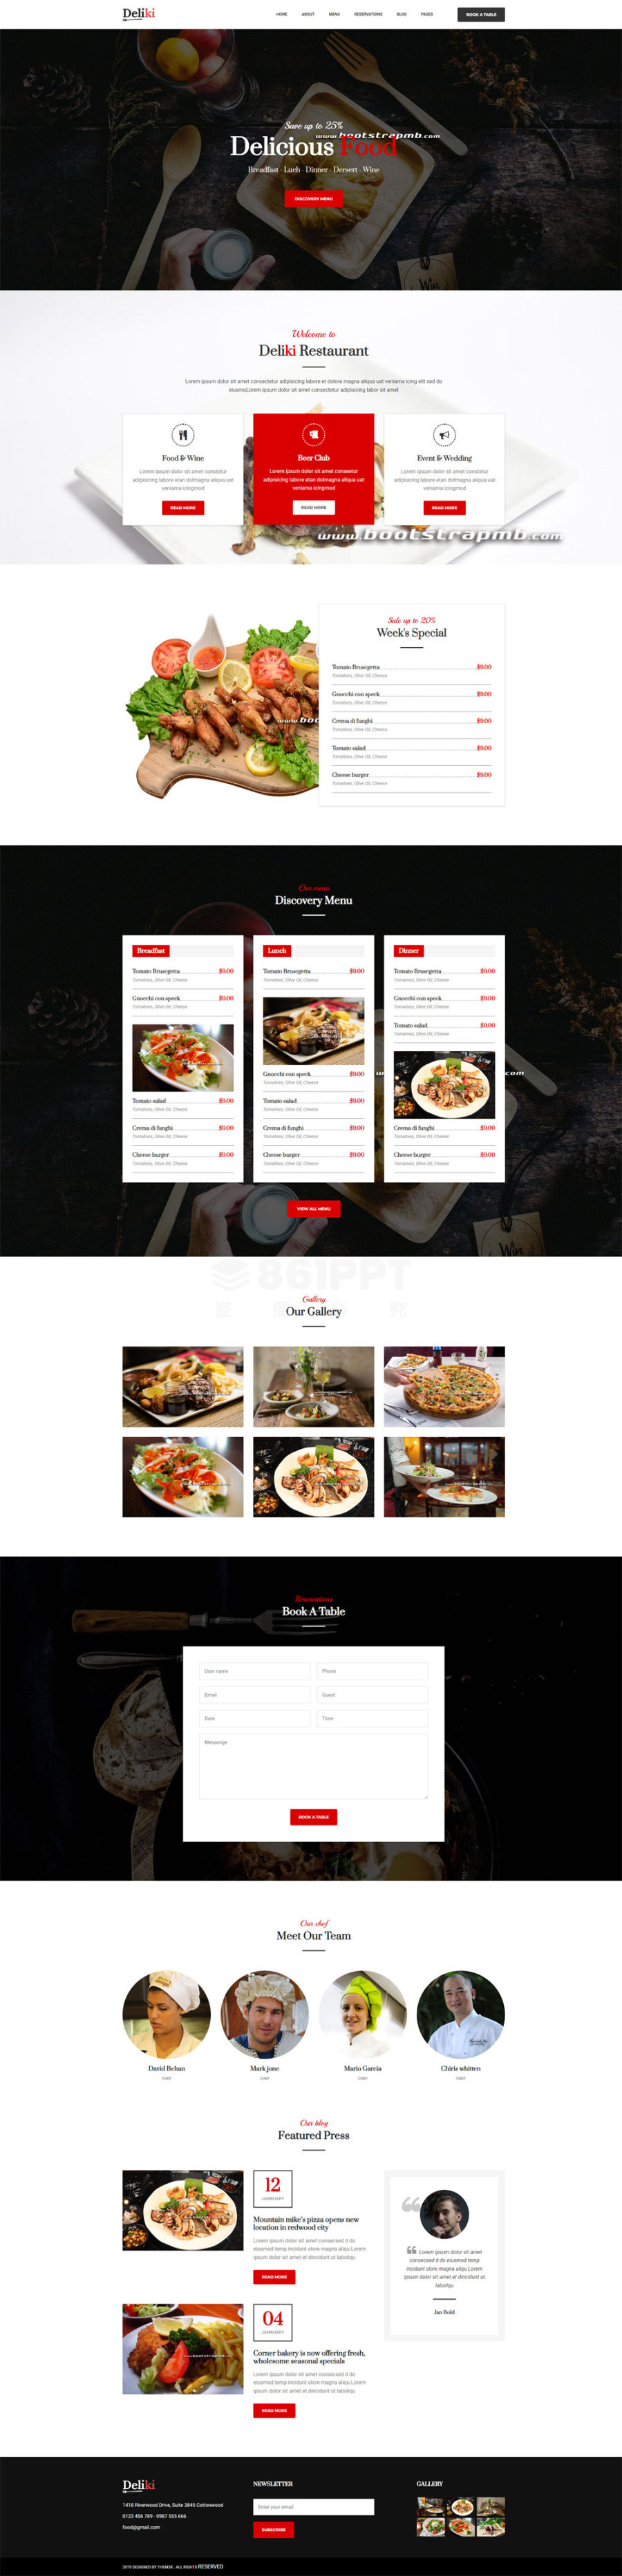 精美大气的美食餐厅图文展示网站设计模板